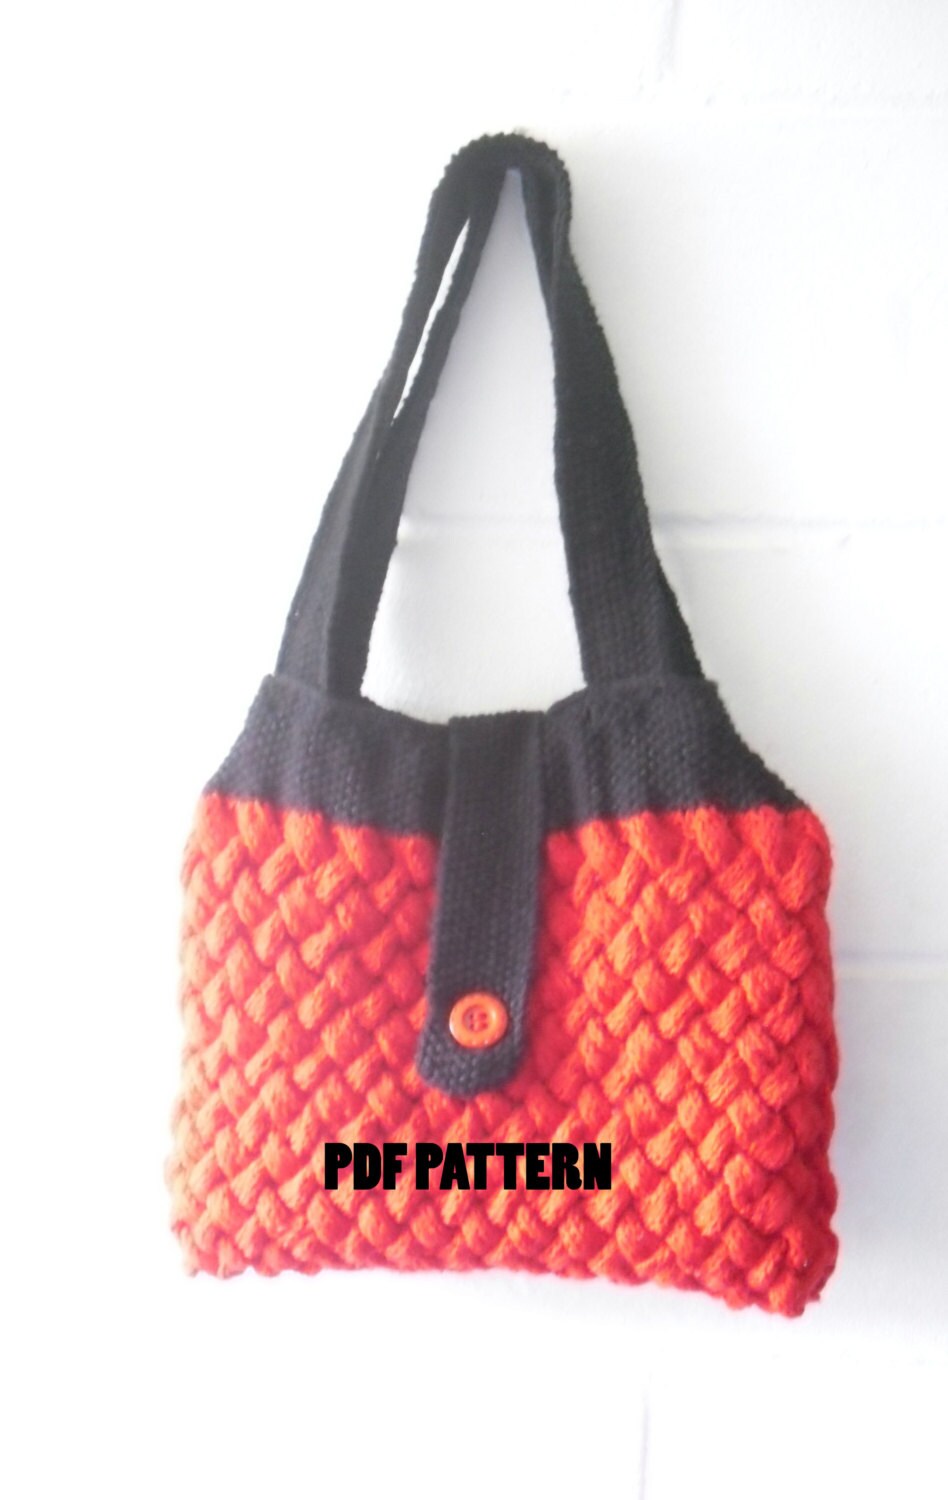 Knitting PATTERN - Tote Bag Knitting Pattern - Handbag Knitting Pattern -  Purse Knitting Pattern - Knitting Bag Knitting Pattern - PDF 130